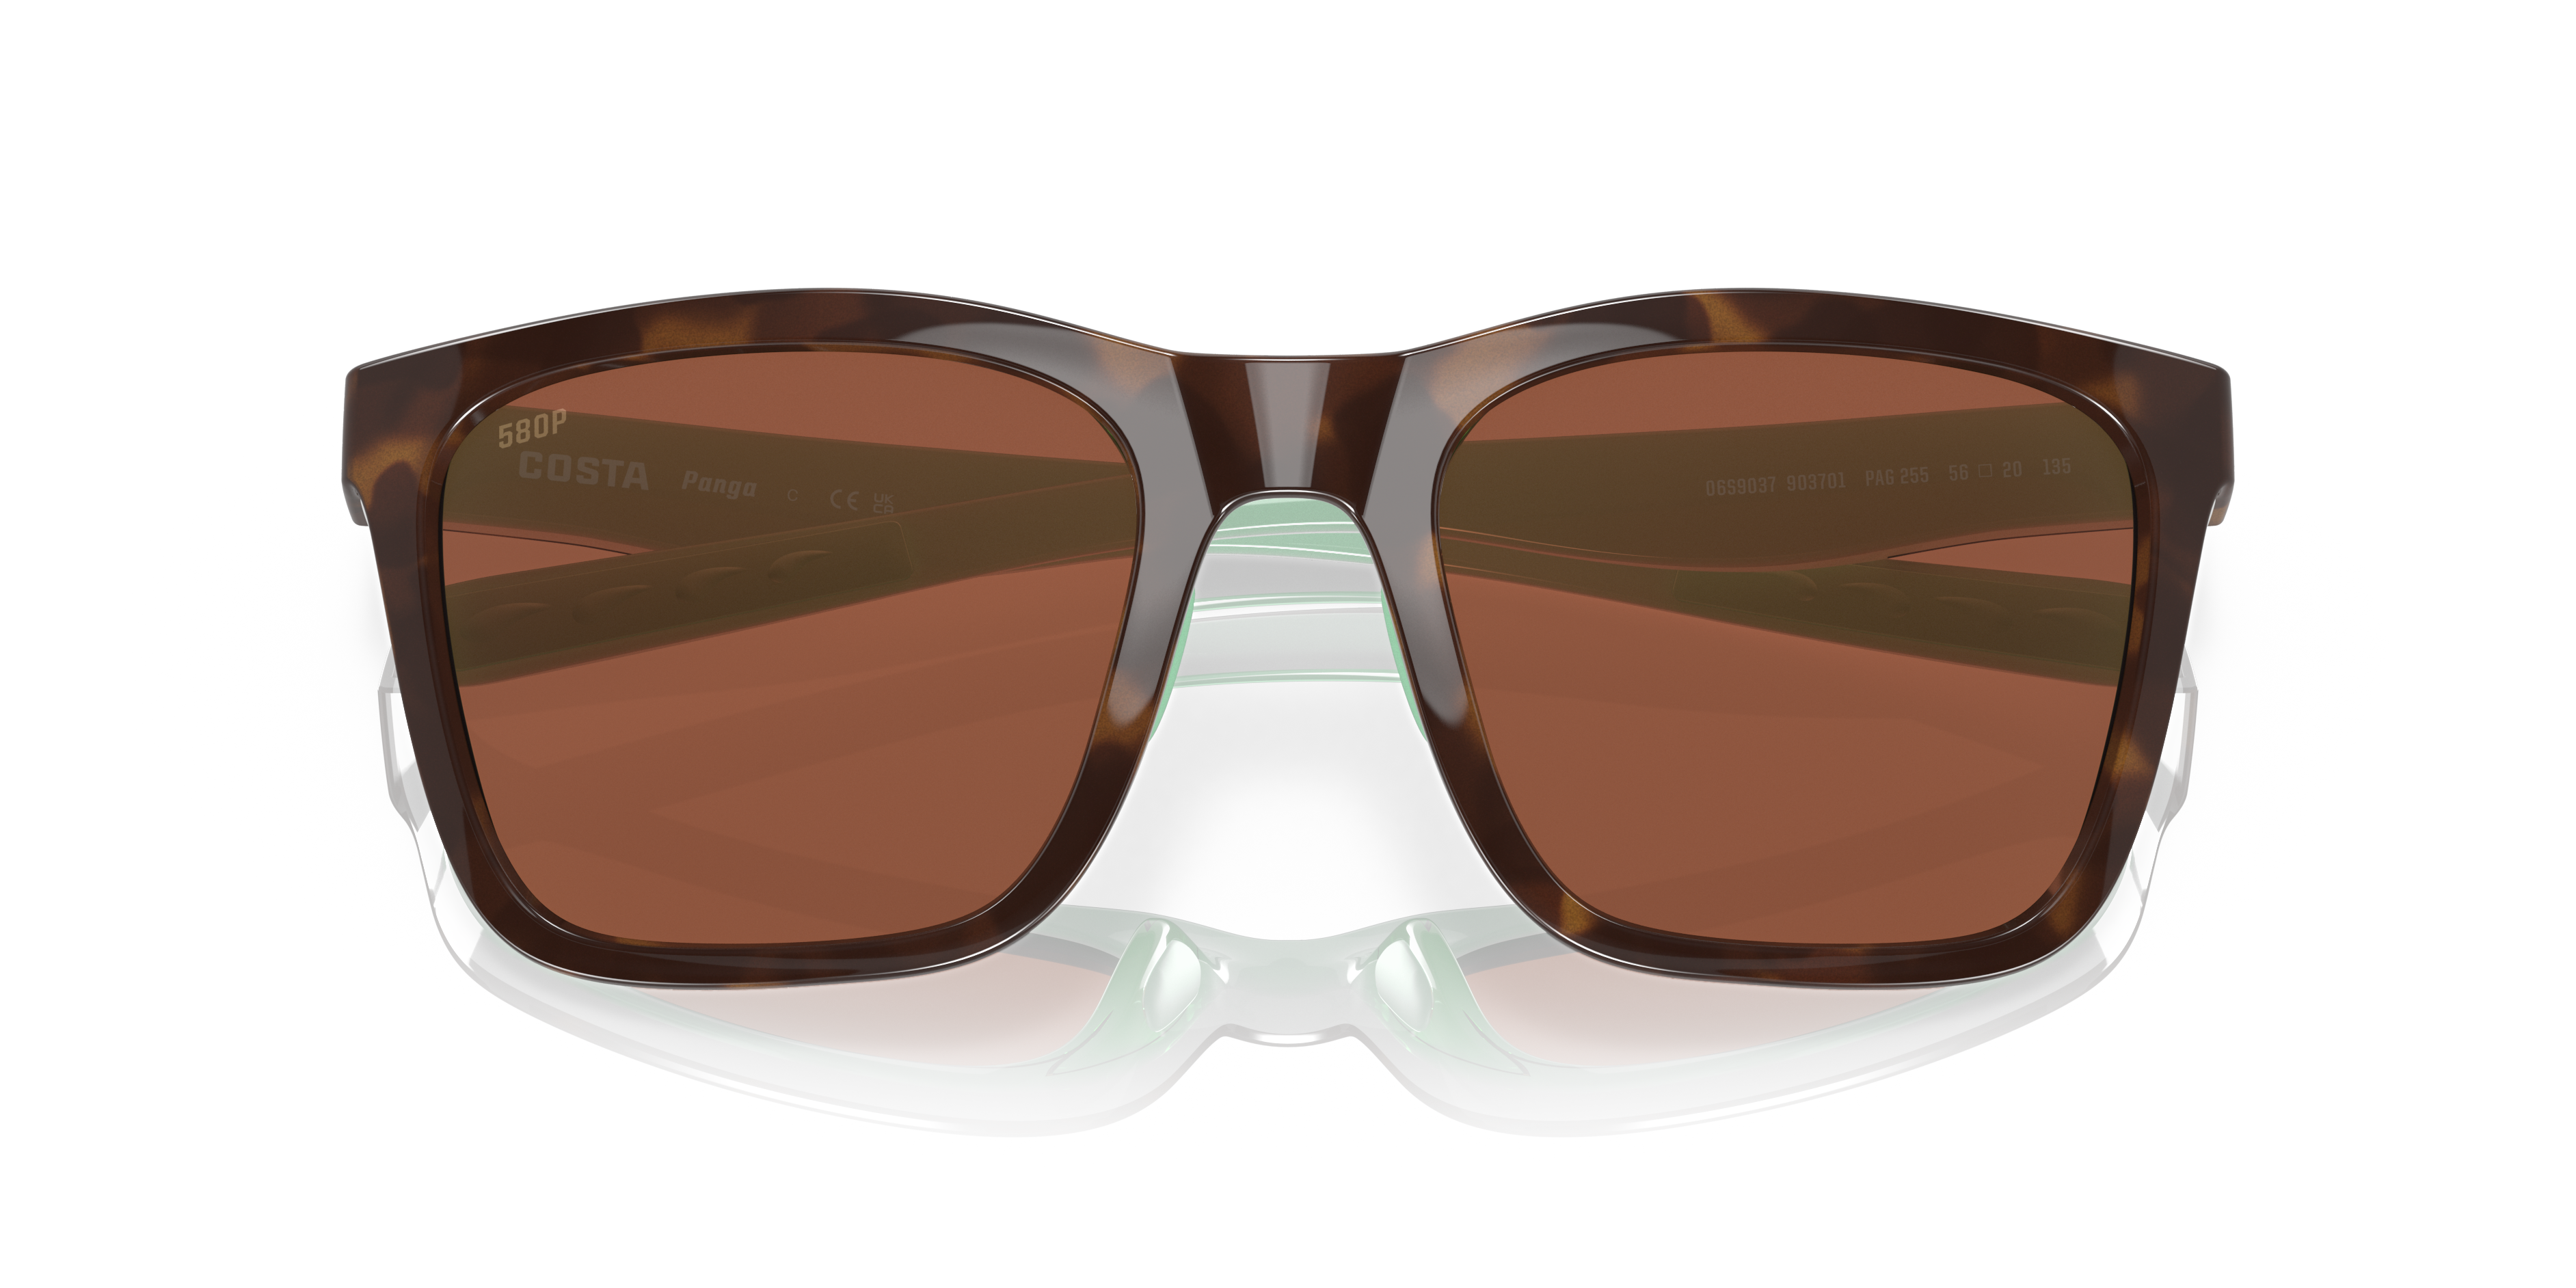 日本最大級の品揃え ジェットラグ 店 取寄 コスタ パンガ ポーラライズド サングラス Costa Panga Polarized  Sunglasses